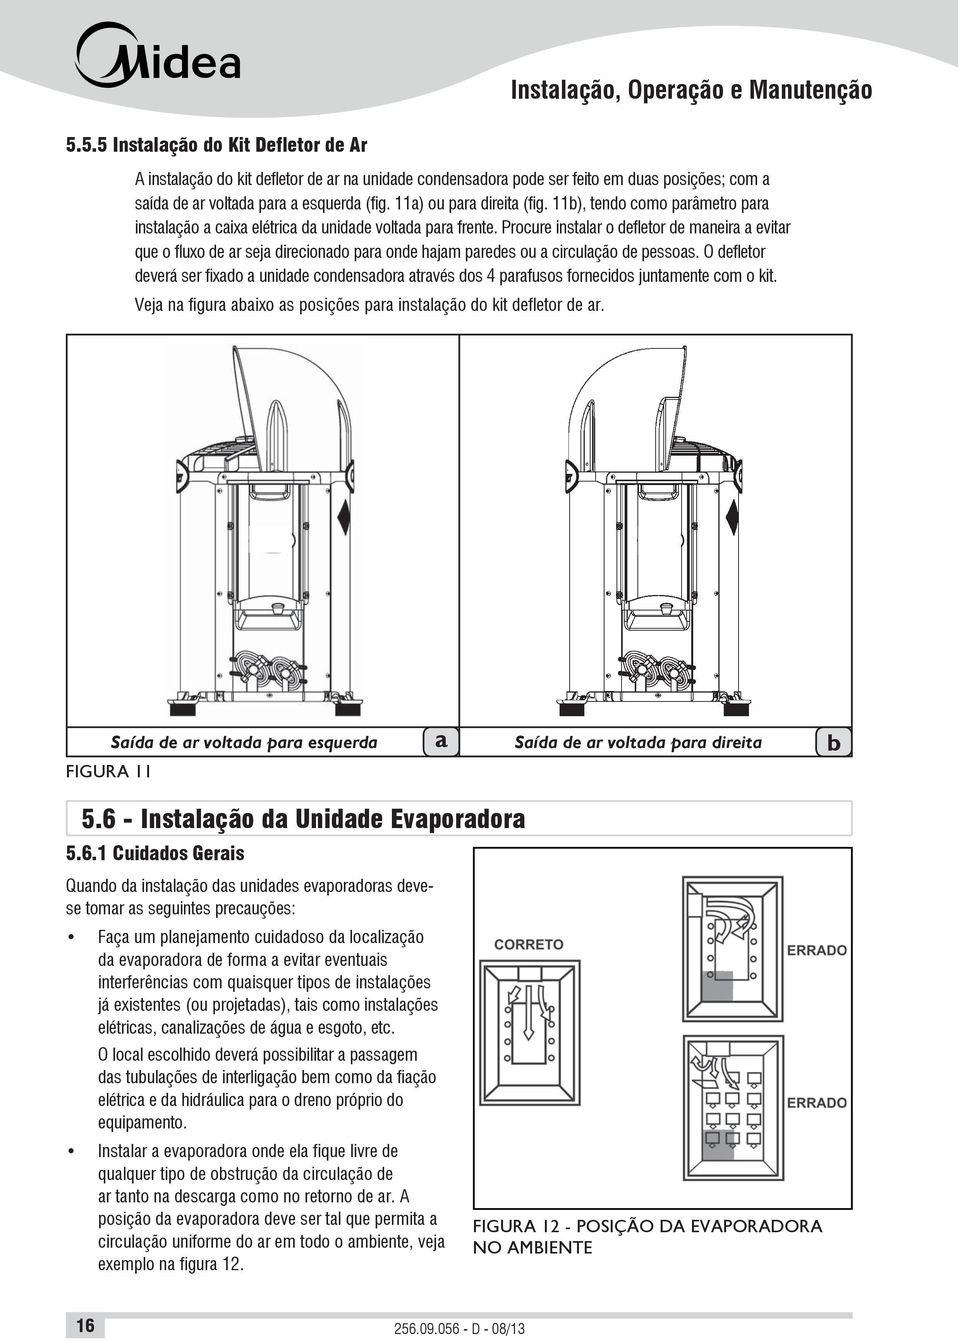 11a) ou para direita (fig. 11b), tendo como parâmetro para instalação a caixa elétrica da unidade voltada para frente.